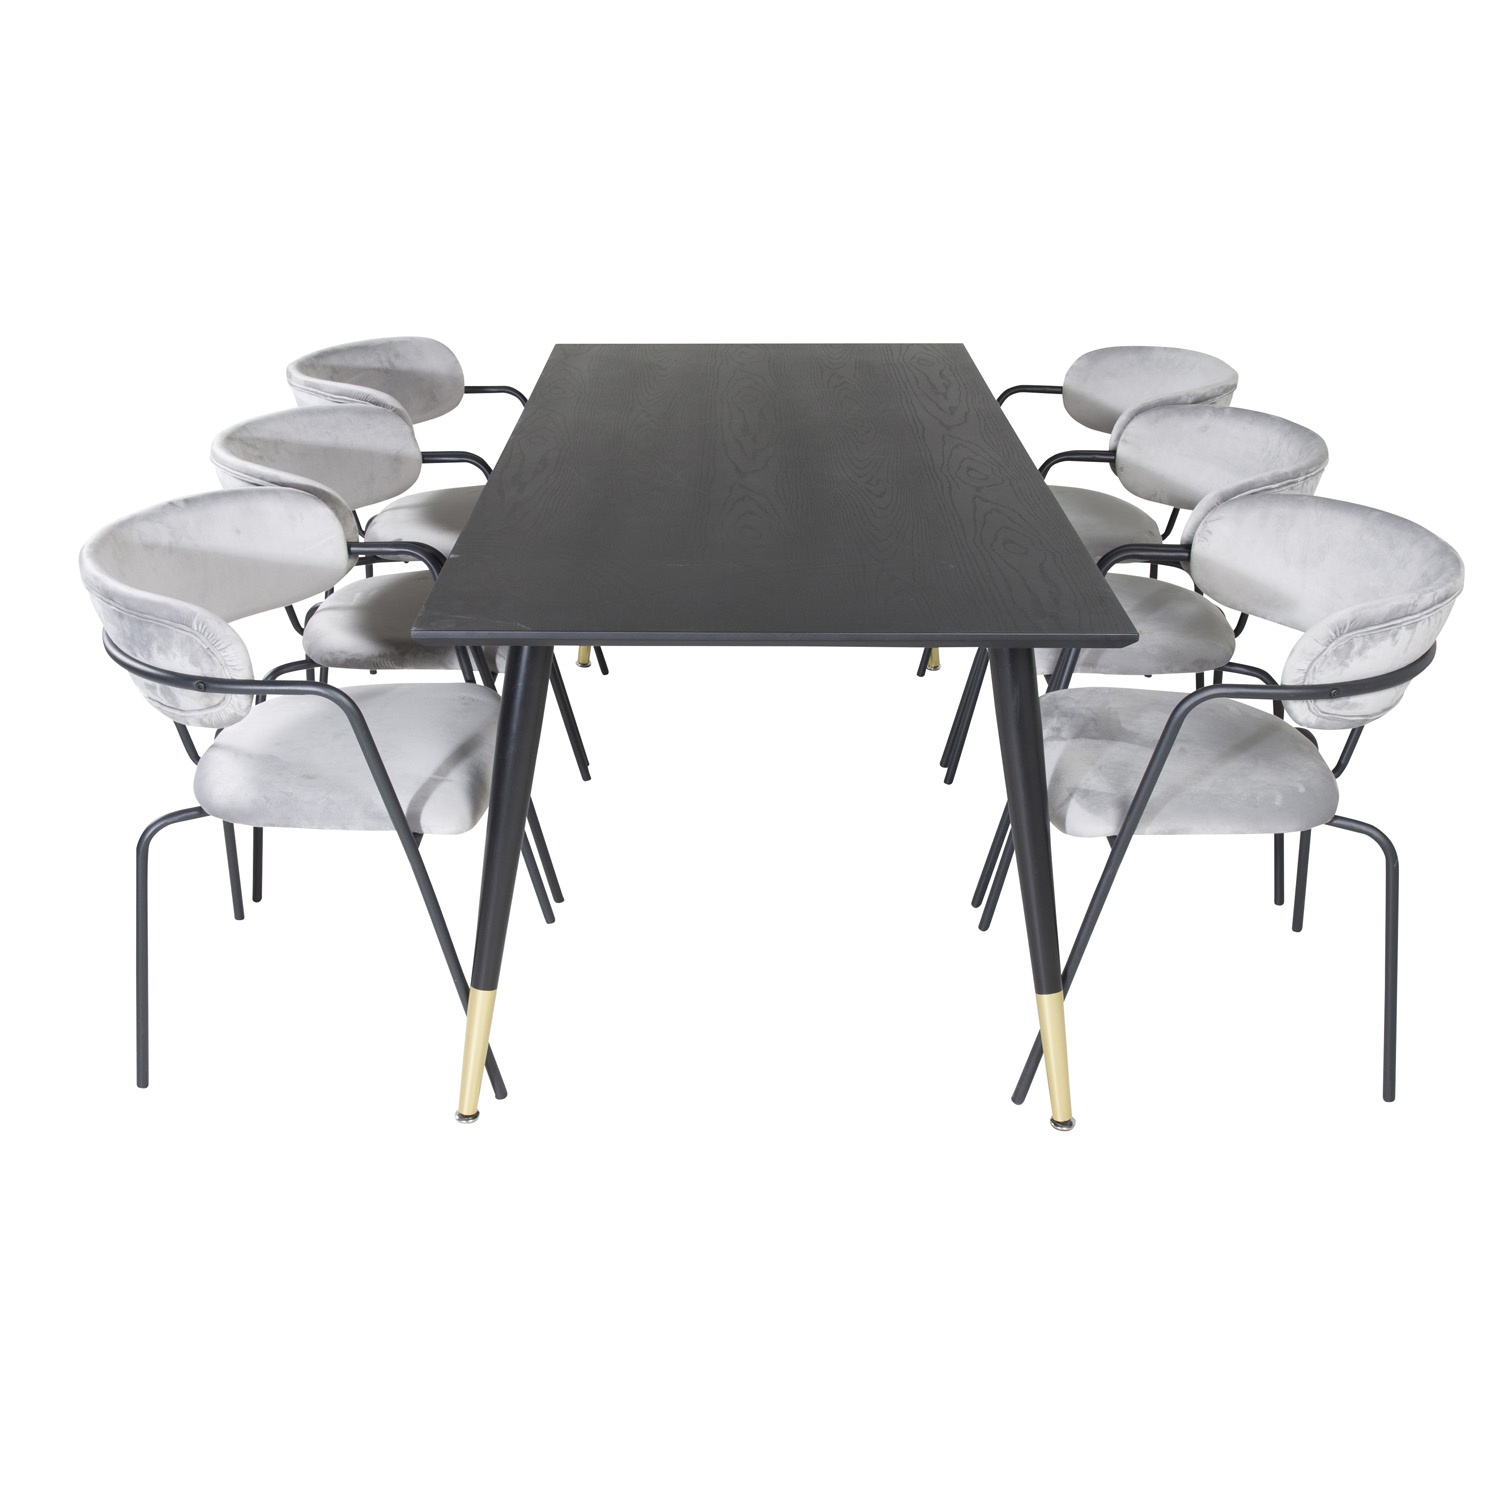 VENTURE DESIGN Dipp spisebordssæt, m. 6 stole - sort finer/messing sort metal, grå fløjl/sort metal